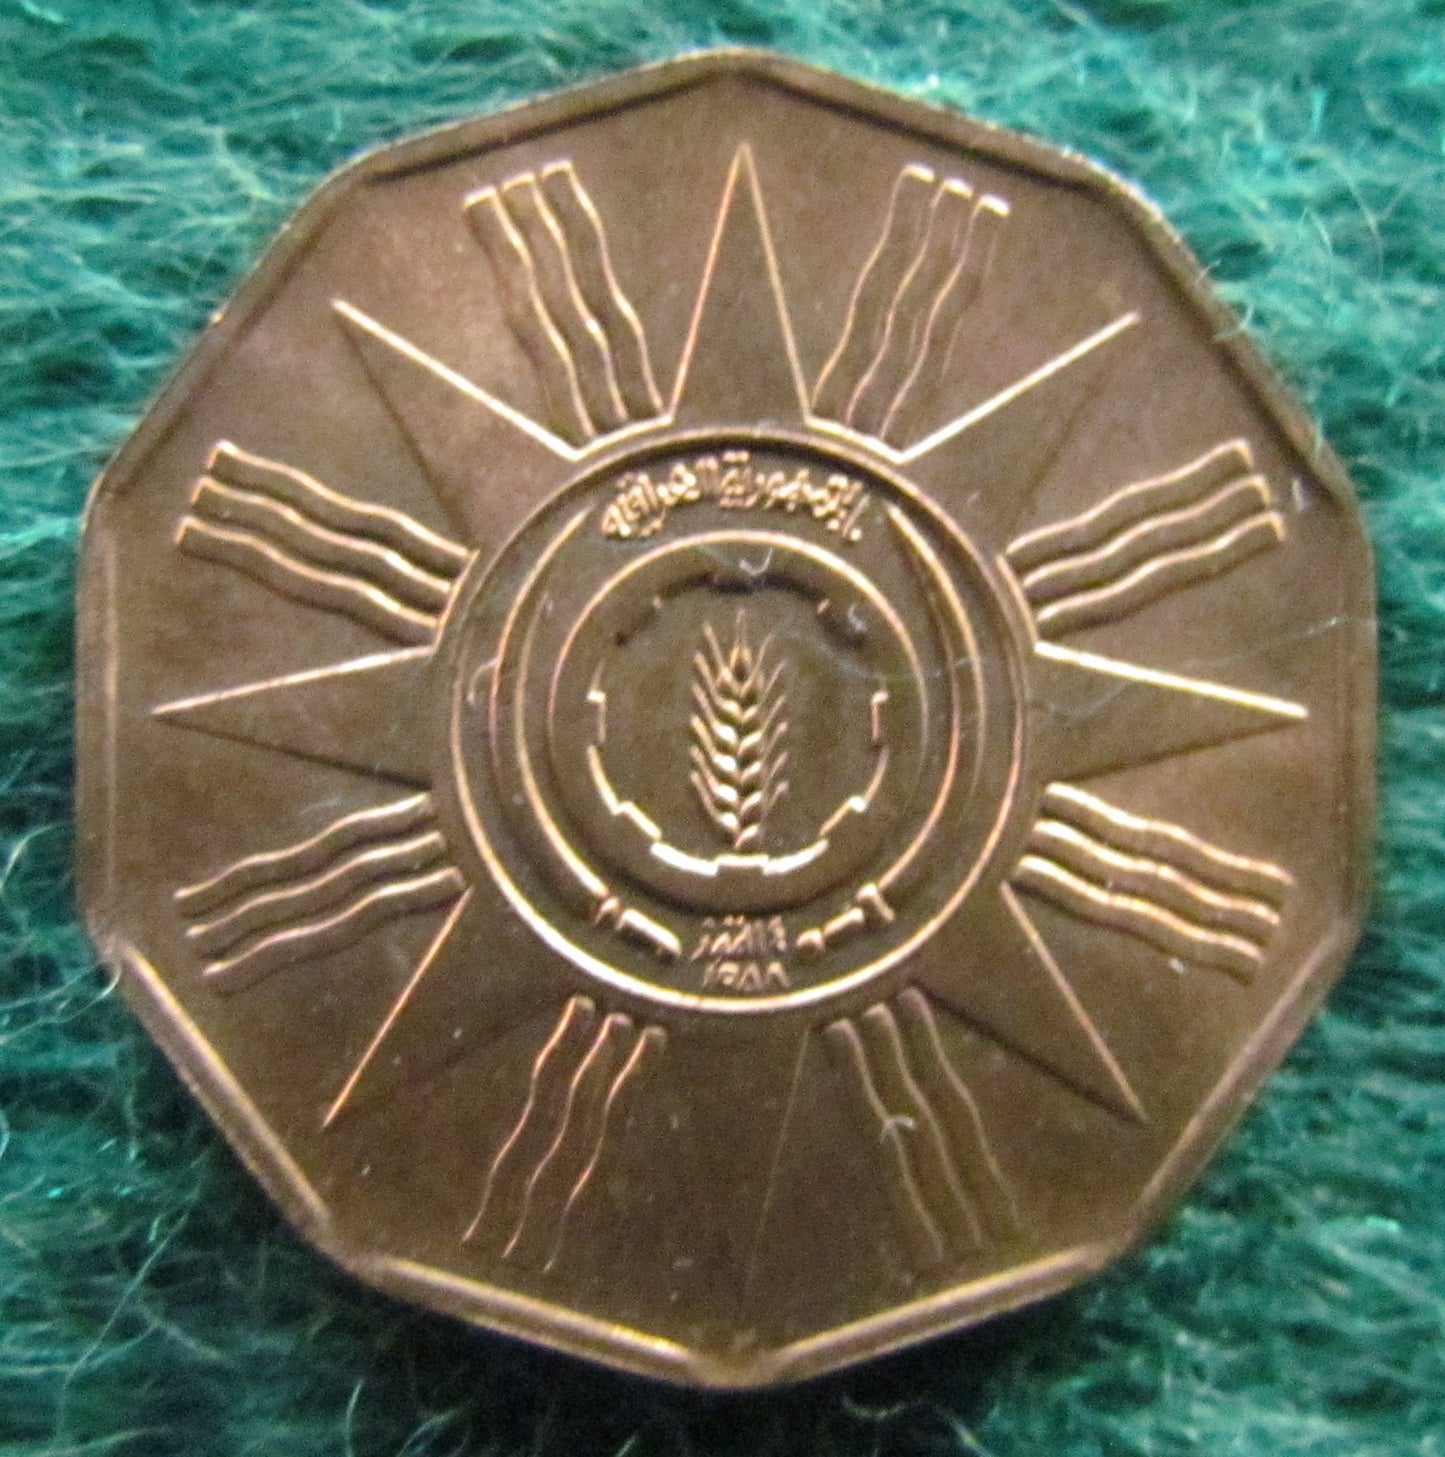 Iraq 1959 1 Fil Coin AH 1379 - Circulated